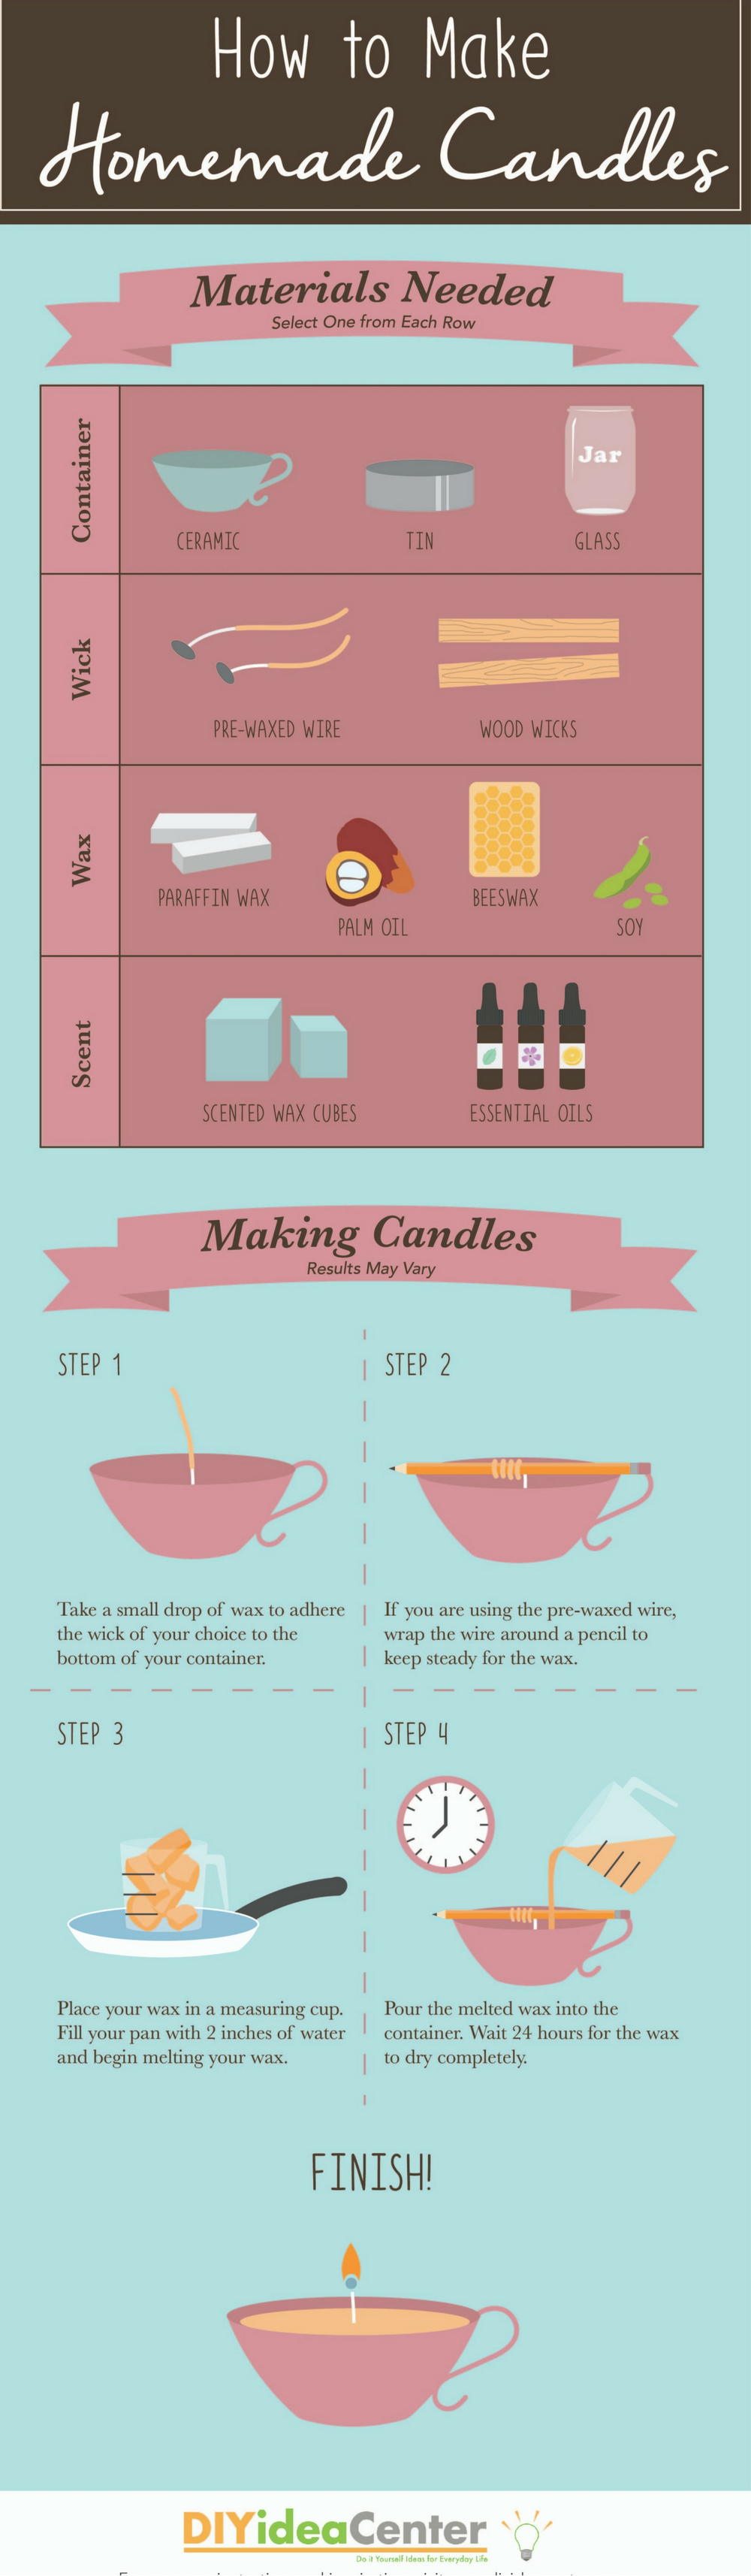 How to Make Homemade Candles | DIYIdeaCenter.com